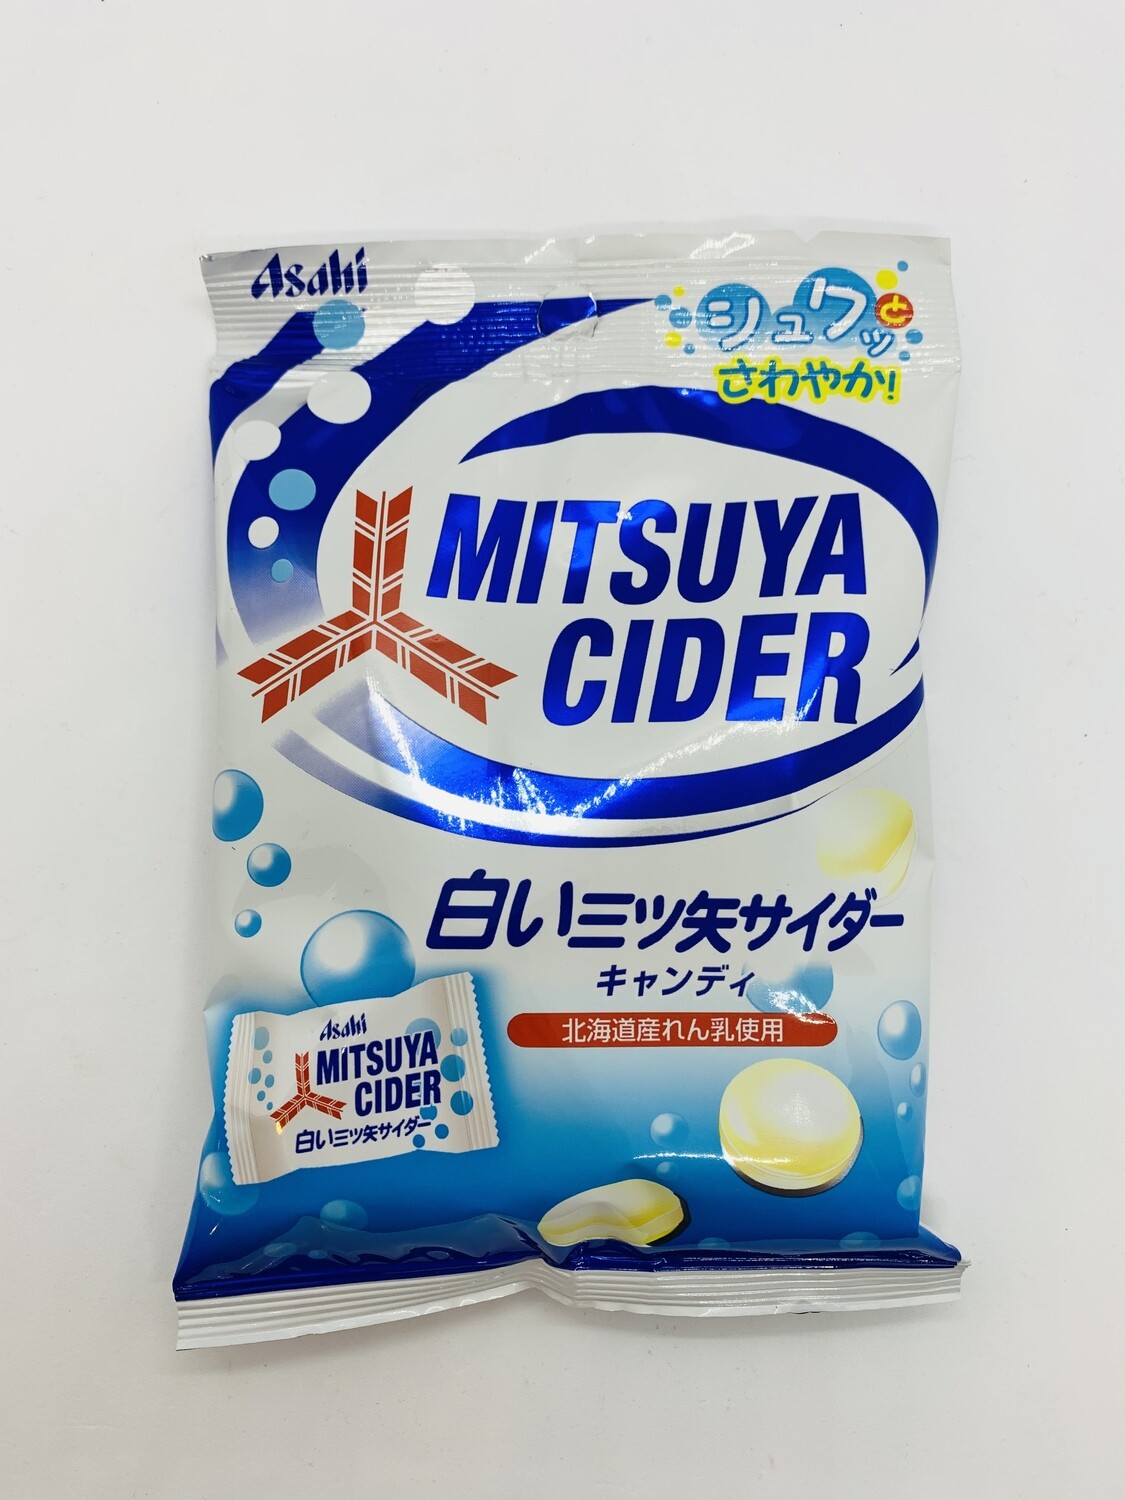 ASAHI Mitsuya Cider Candy